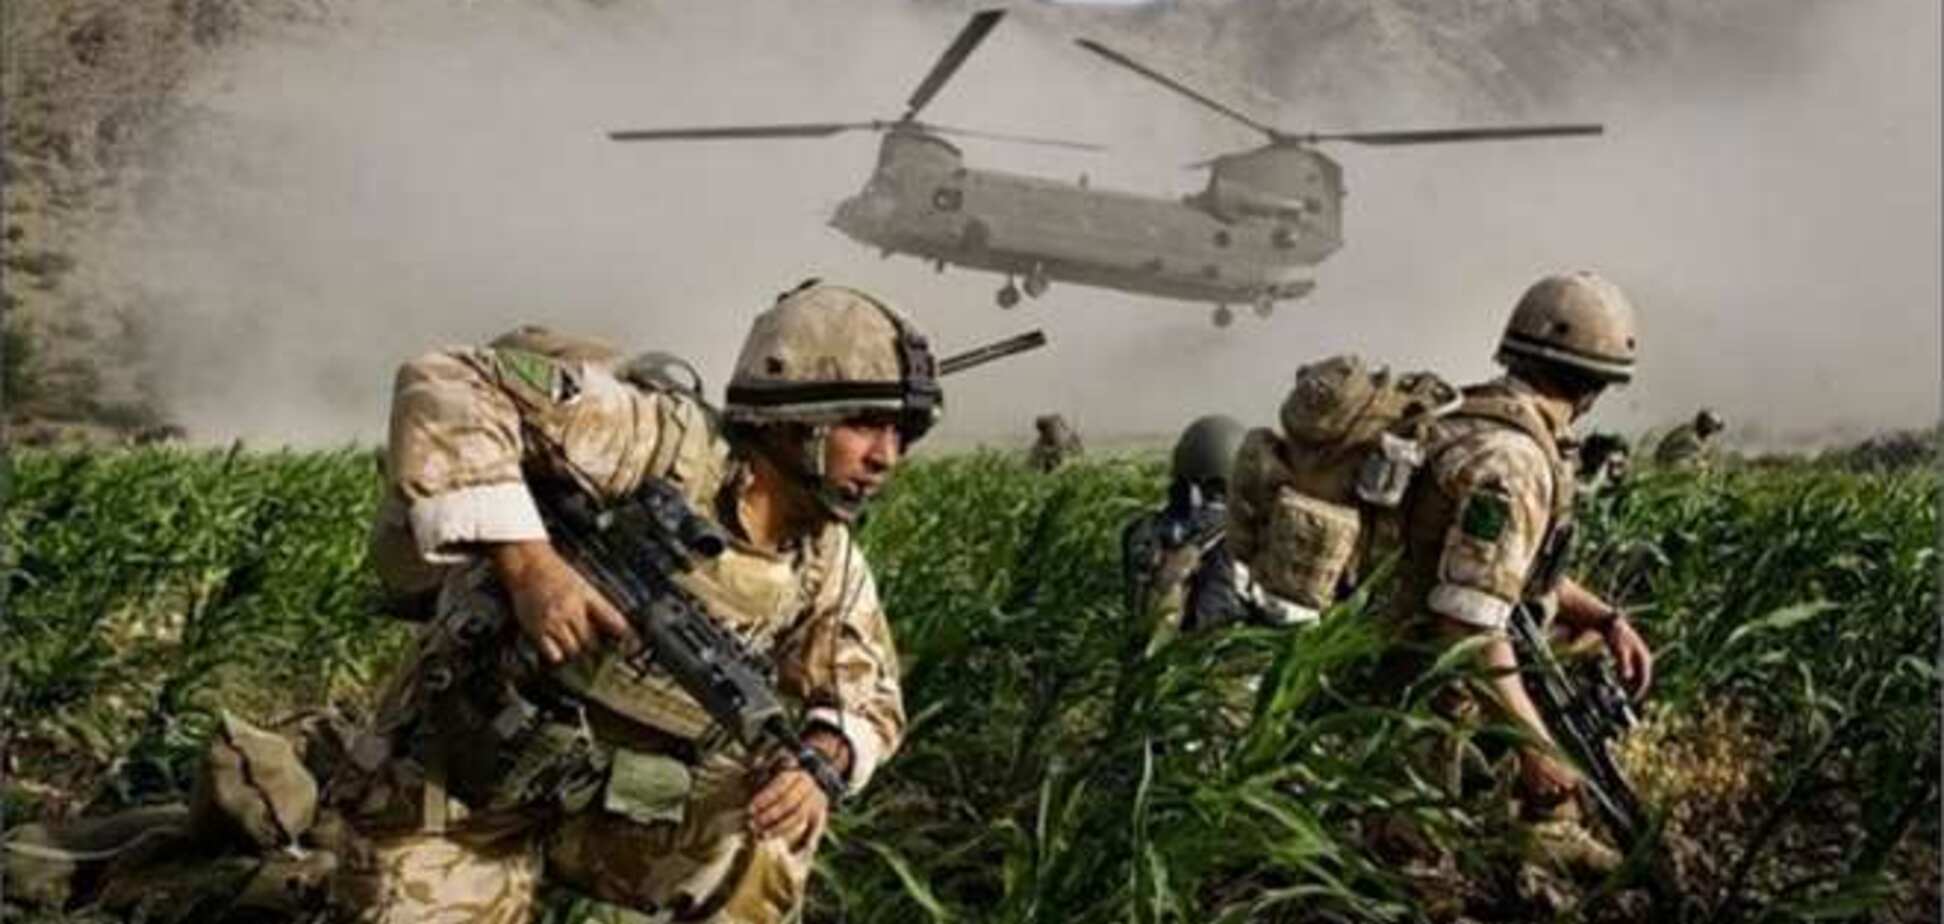 Італійські війська залишаться в Афганістані після 2014 року